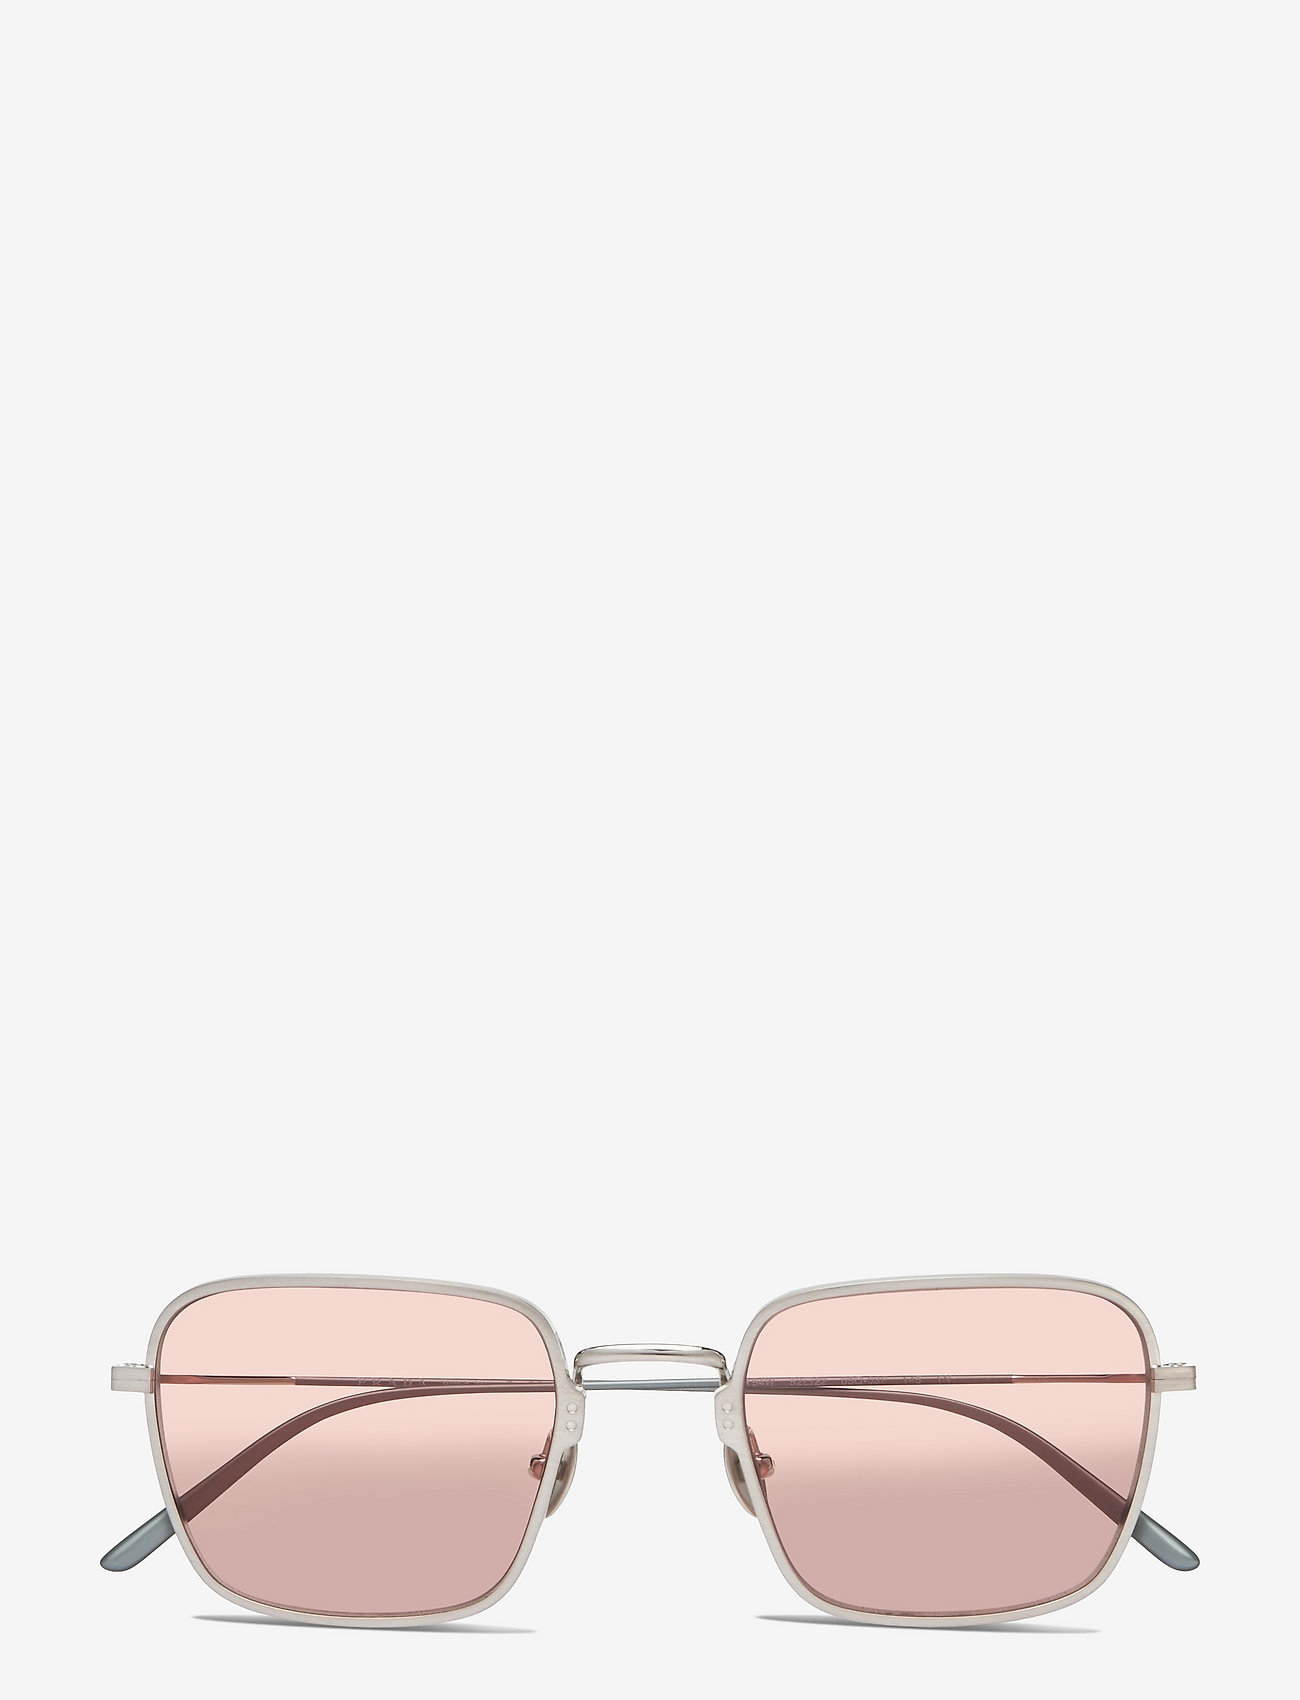 Prada Sunglasses 0pr54ws - D-shaped | Boozt.com